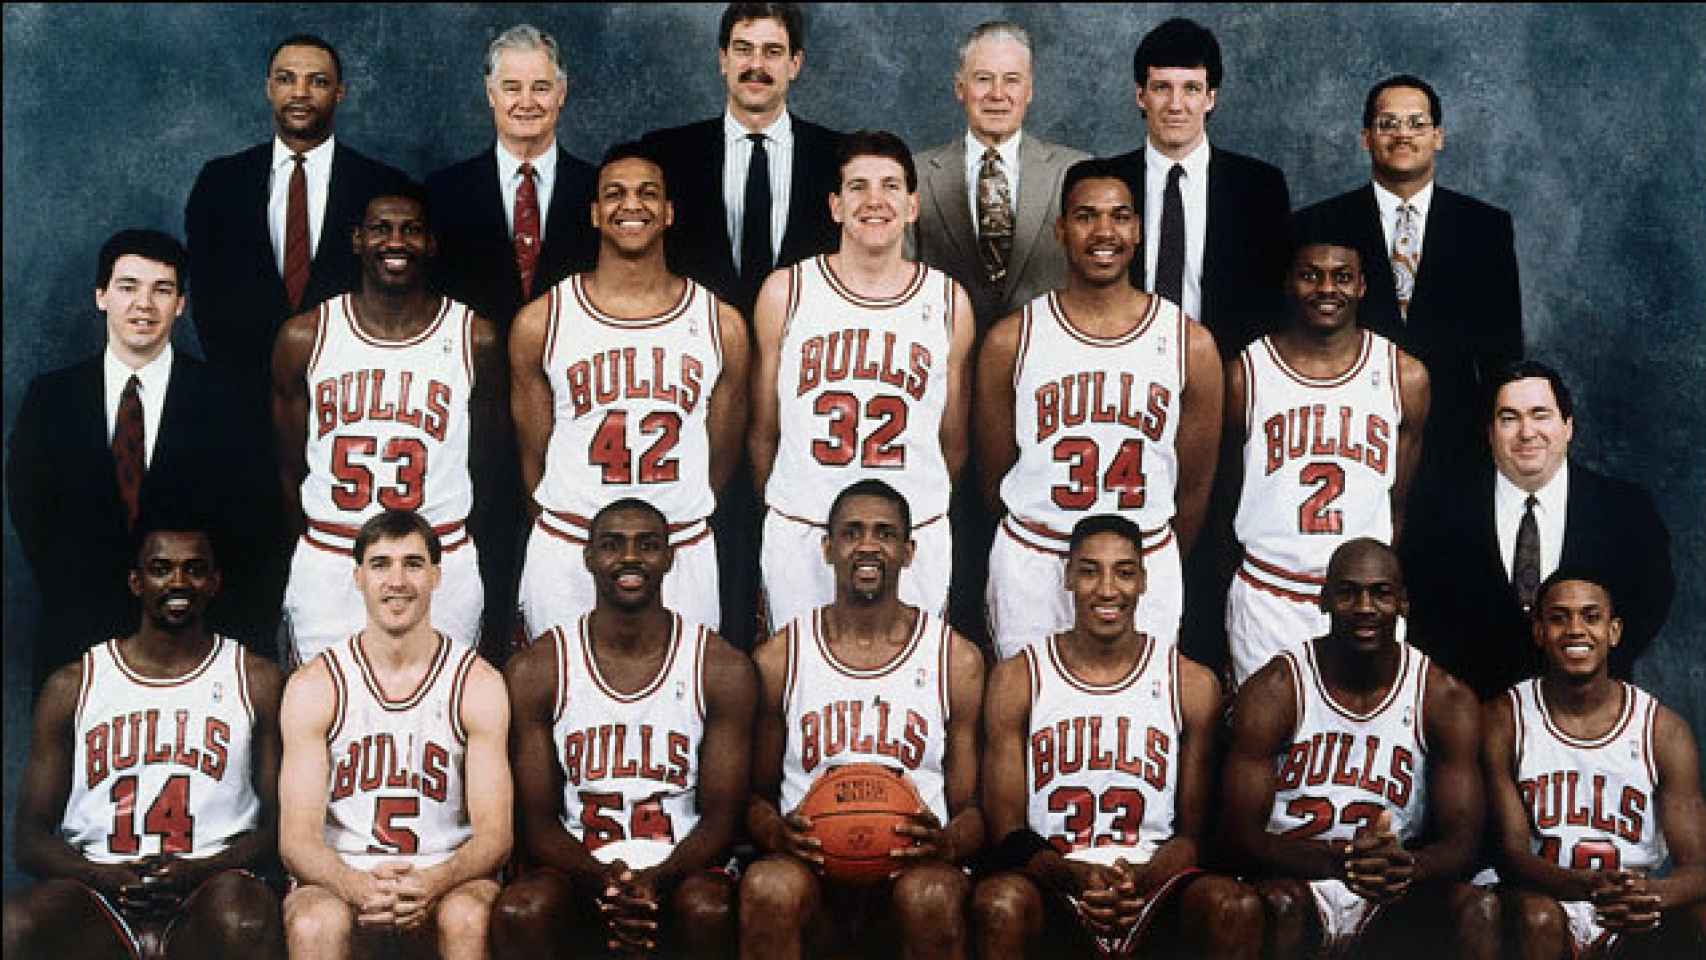 Plantilla de los Chicago Bulls para la temporada 1990/1991.